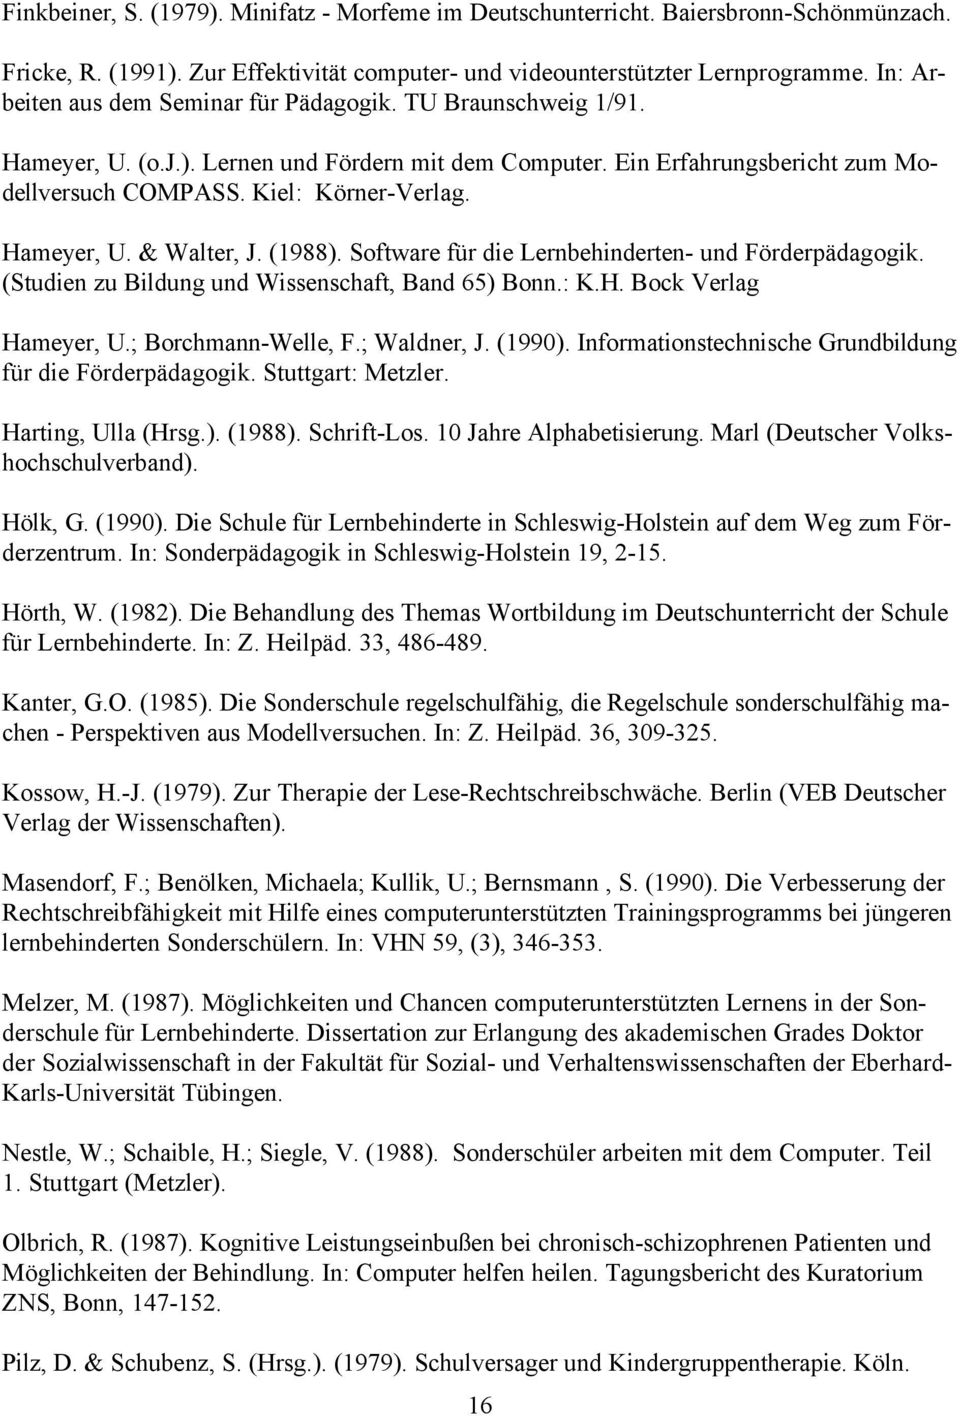 Hameyer, U. & Walter, J. (1988). Software für die Lernbehinderten- und Förderpädagogik. (Studien zu Bildung und Wissenschaft, Band 65) Bonn.: K.H. Bock Verlag Hameyer, U.; Borchmann-Welle, F.